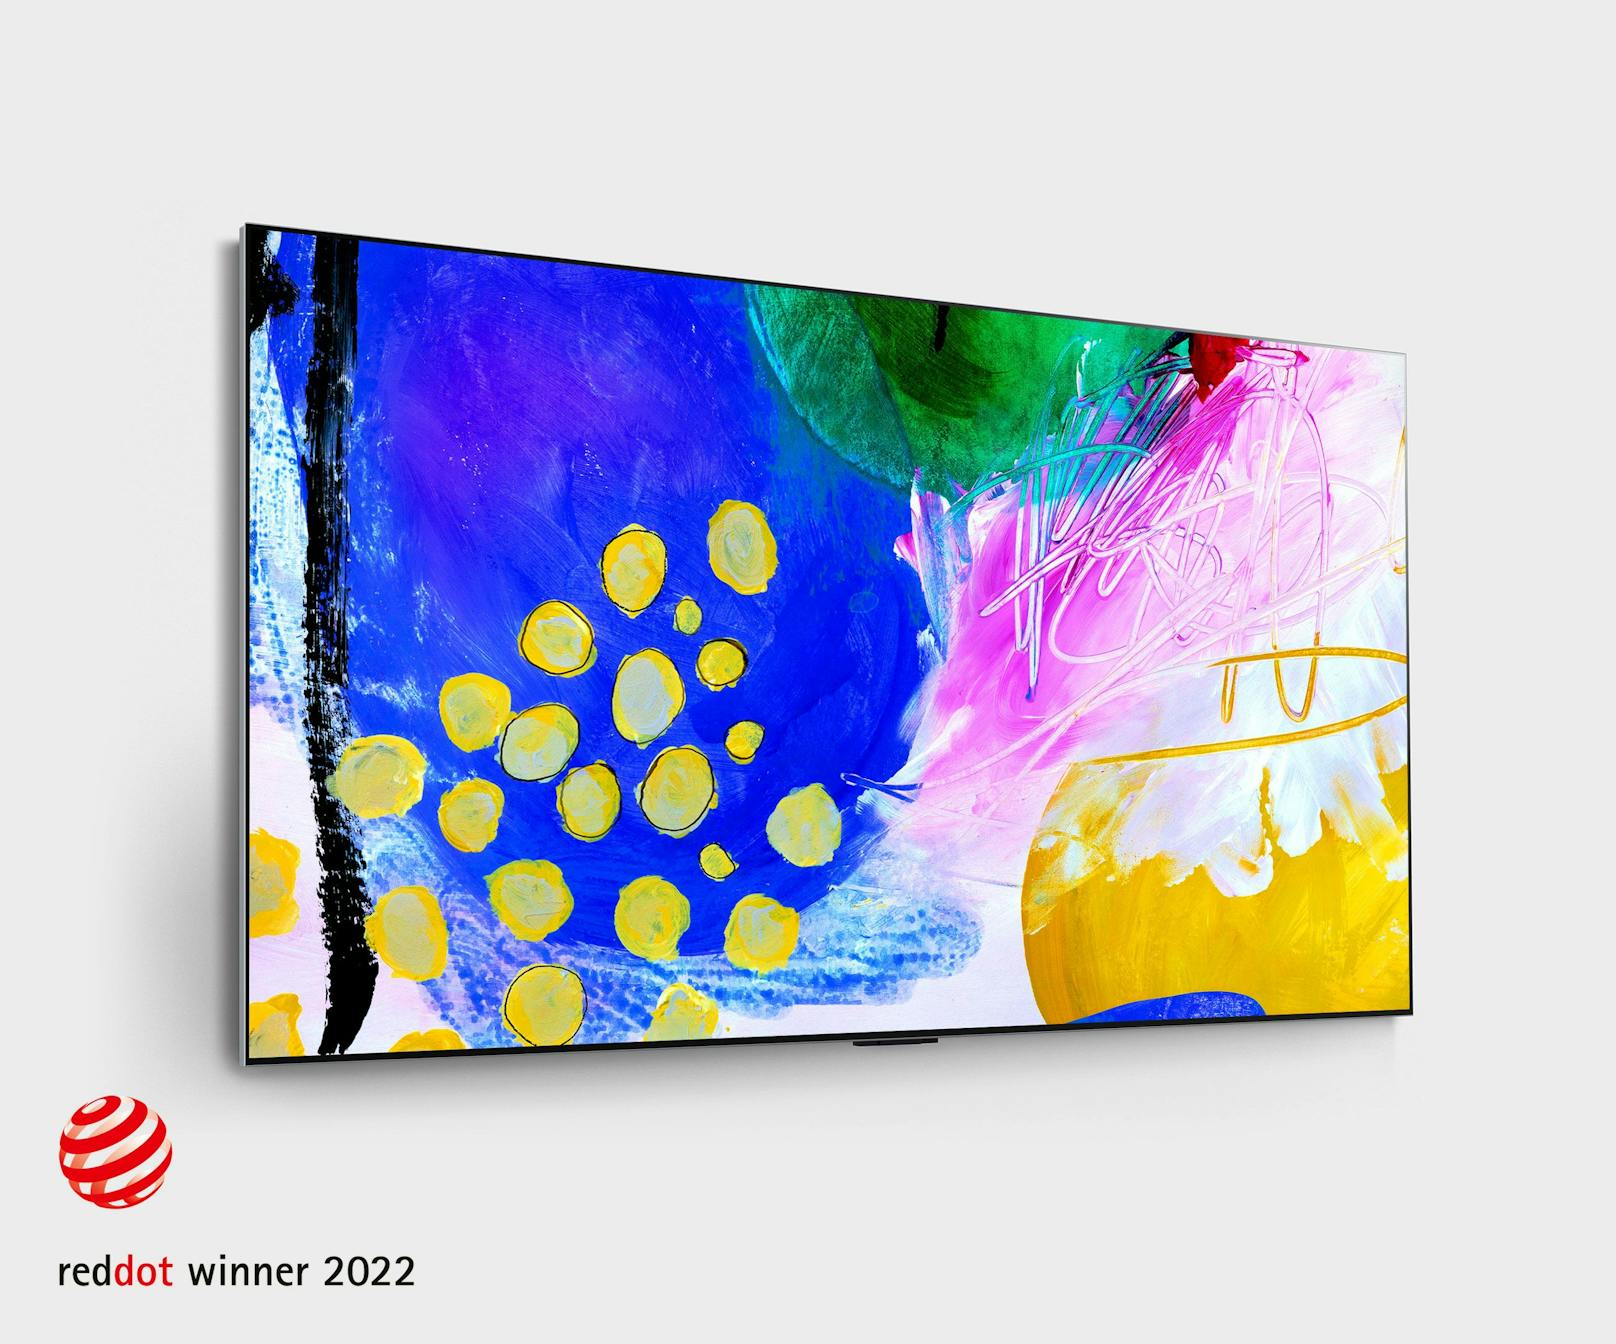 Ein weiterer "Best of the Best"-Preisträger ist der neue LG Lifestyle-OLED-Fernseher, der noch in diesem Jahr auf den Markt kommen soll.